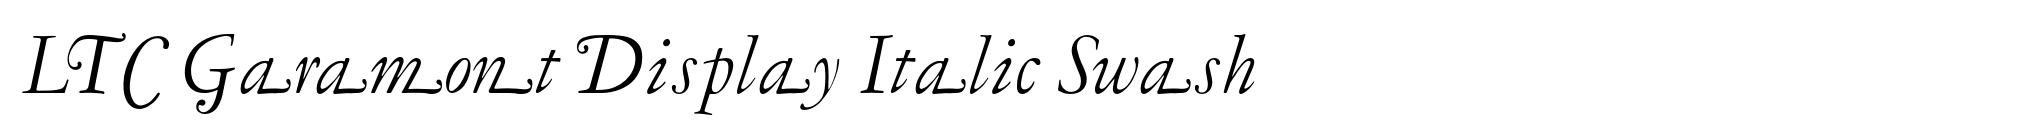 LTC Garamont Display Italic Swash image